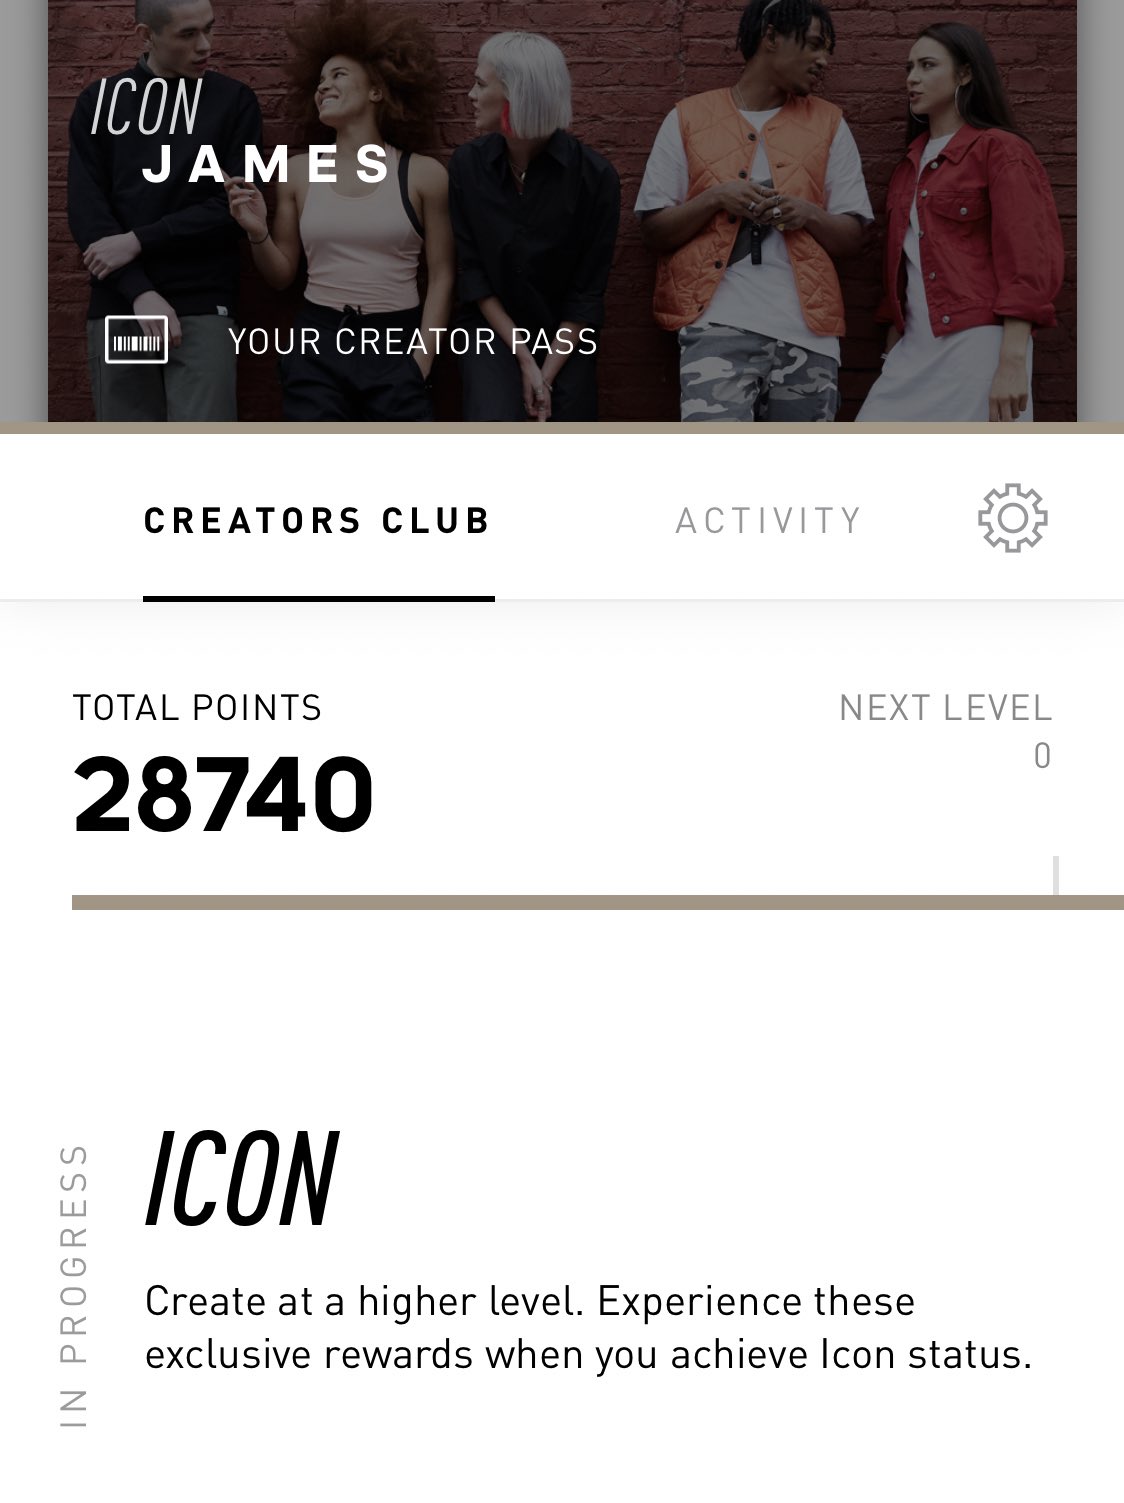 Icon status in the creators club lol 